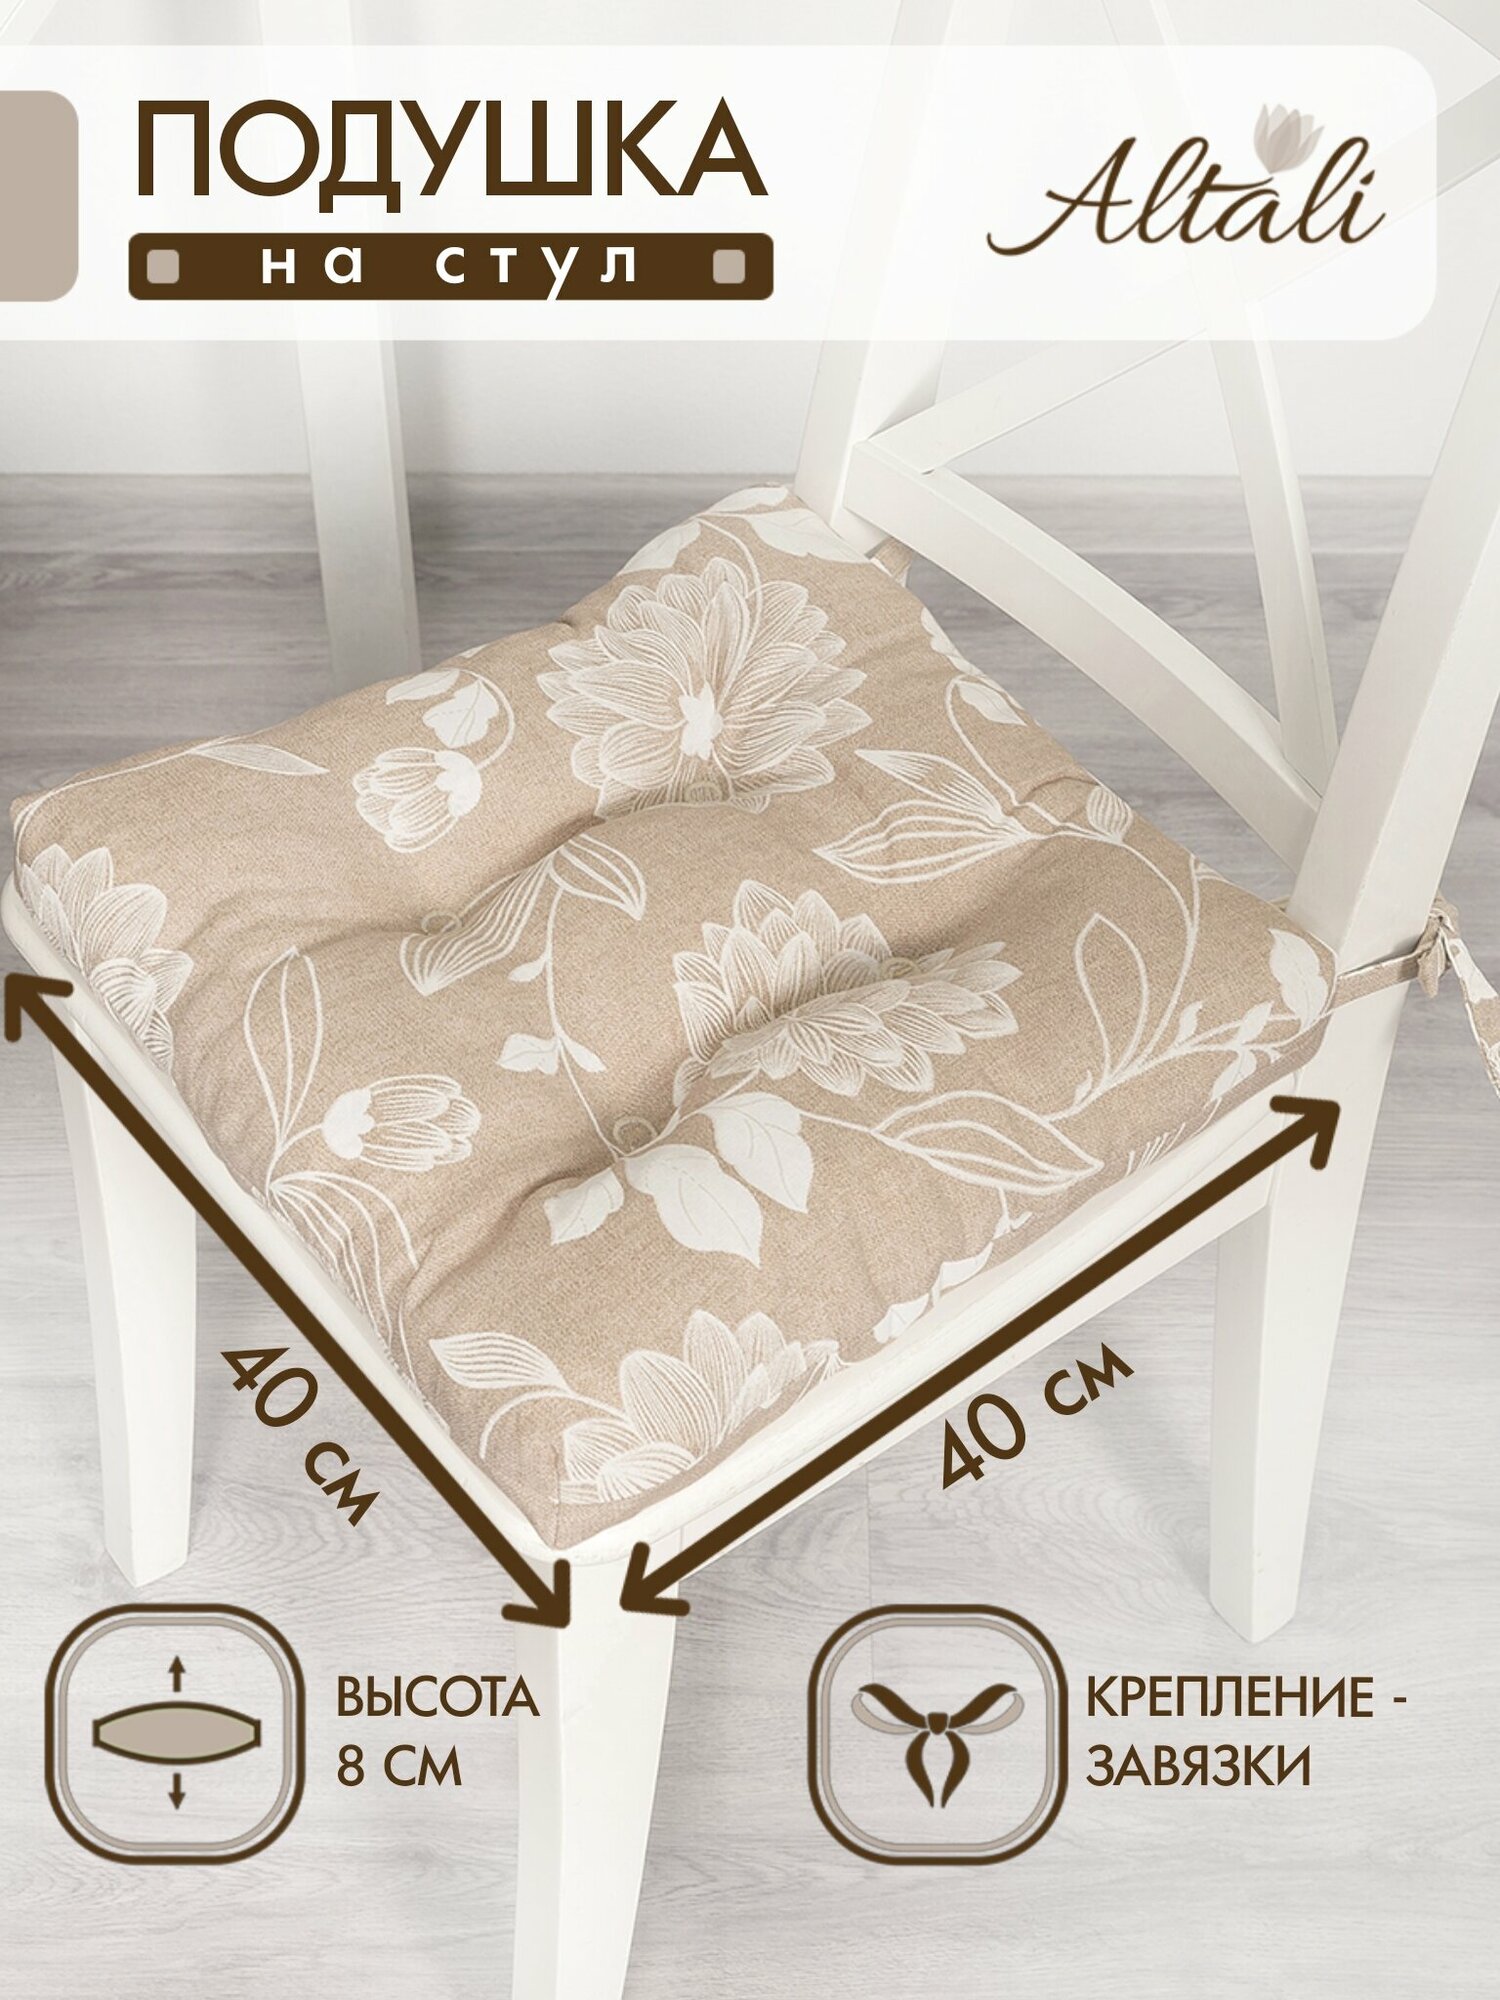 Подушка на стул /40*40 см /на завязках / ткань хлопок /для кухни, зала, гостиной, беседки/ цветы / Altali